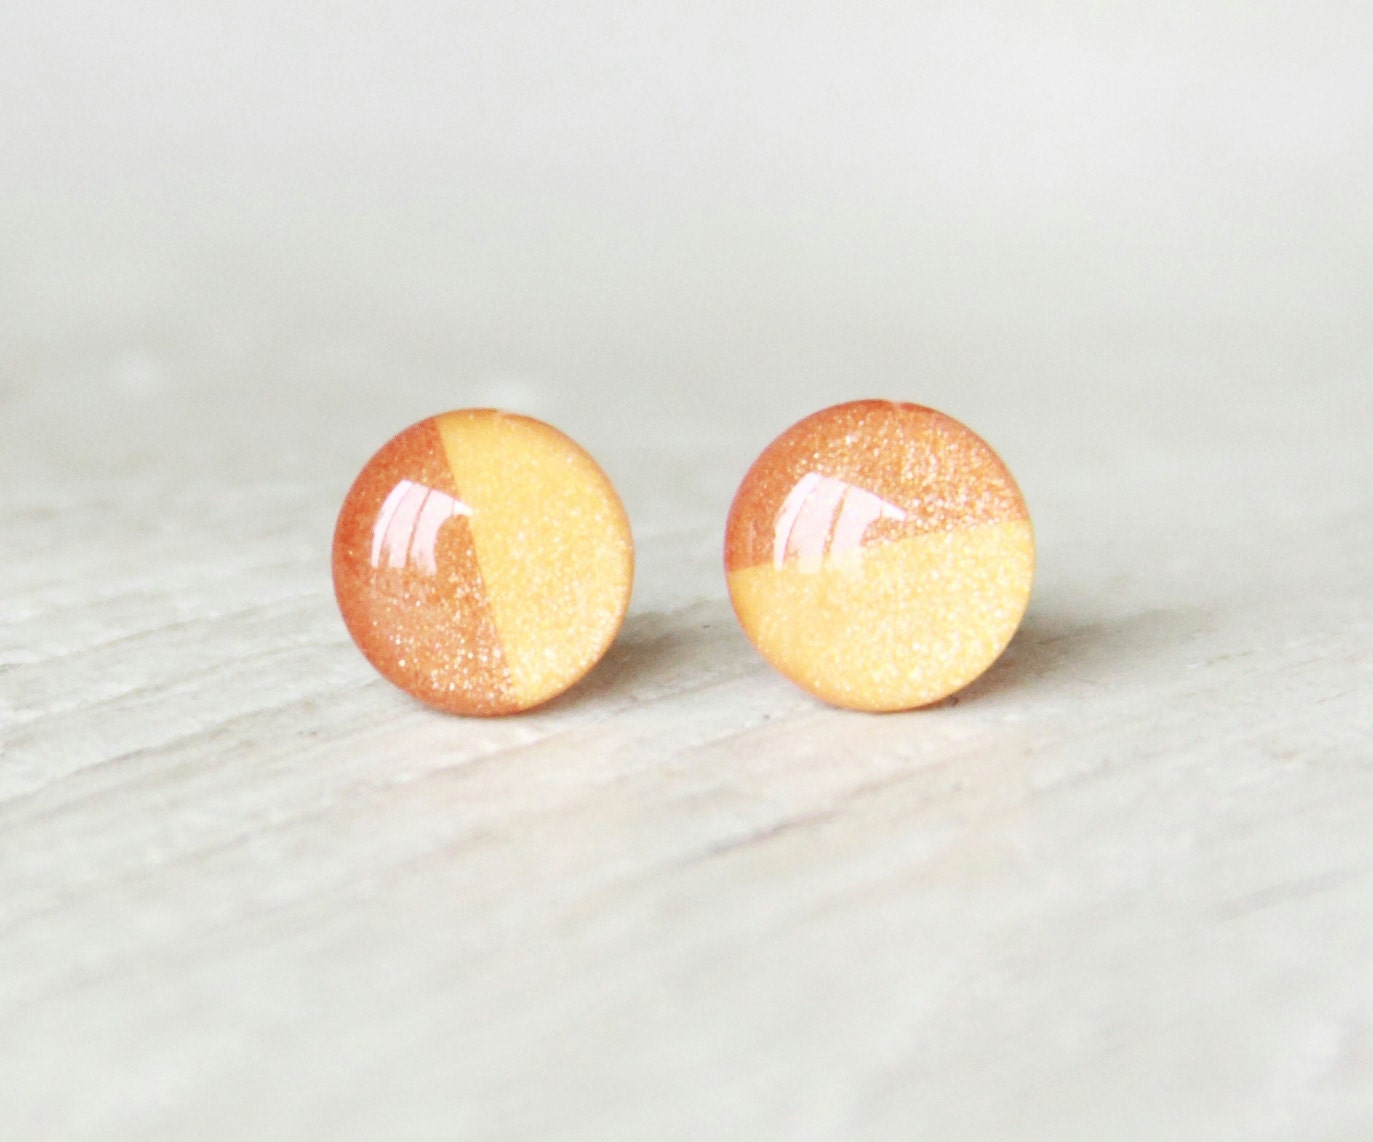 PUMPKIN PIE - Orange Earrings - Stud Earrings - Small Earrings - Fall Fashion - Thanks Giving - Big Earrings - Two Tone Studs By Ear Sugar